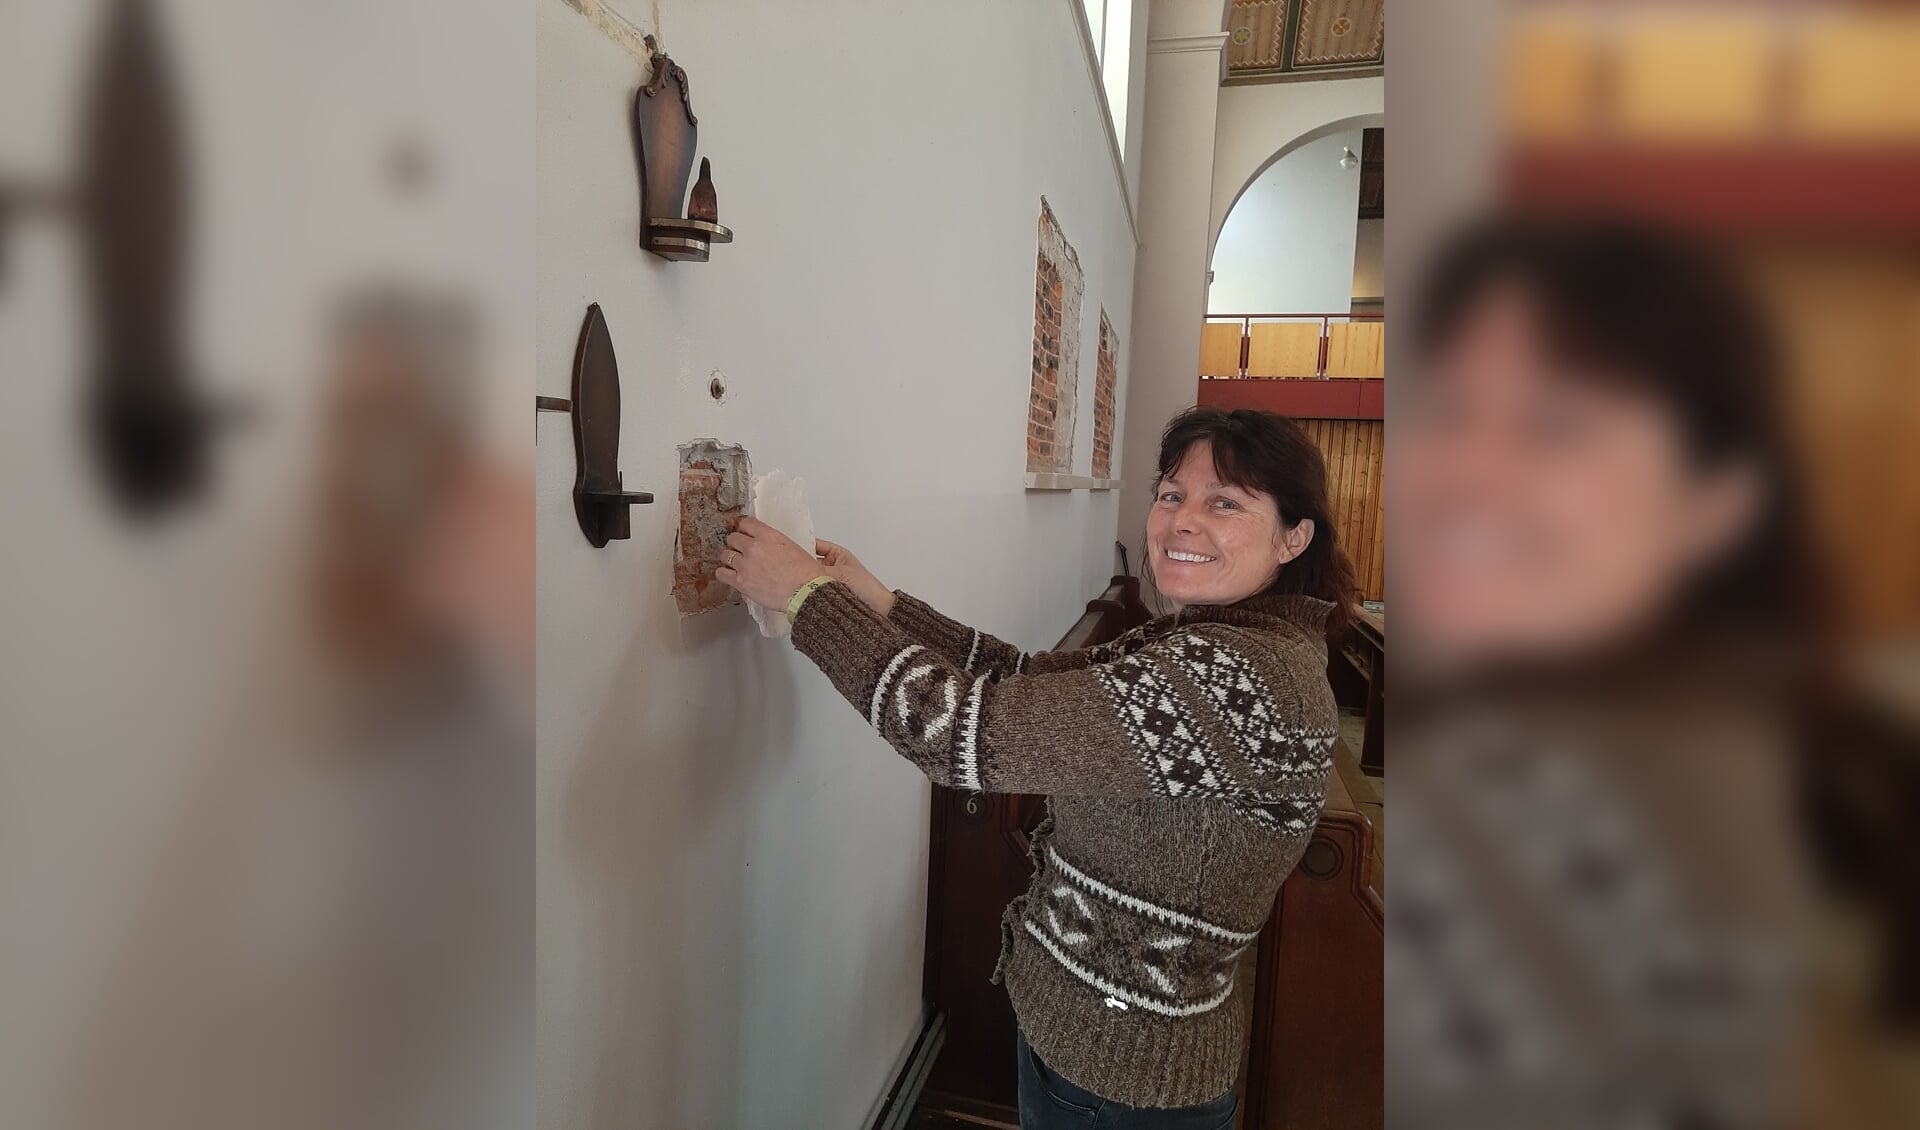 Kunstenares Danielle van Assema-Vet heeft de voormalige RK-kerk Onze Lieve Vrouw Geboorte en de begane grond van het parochiehuis als atelierruimte ter beschikking gekregen.